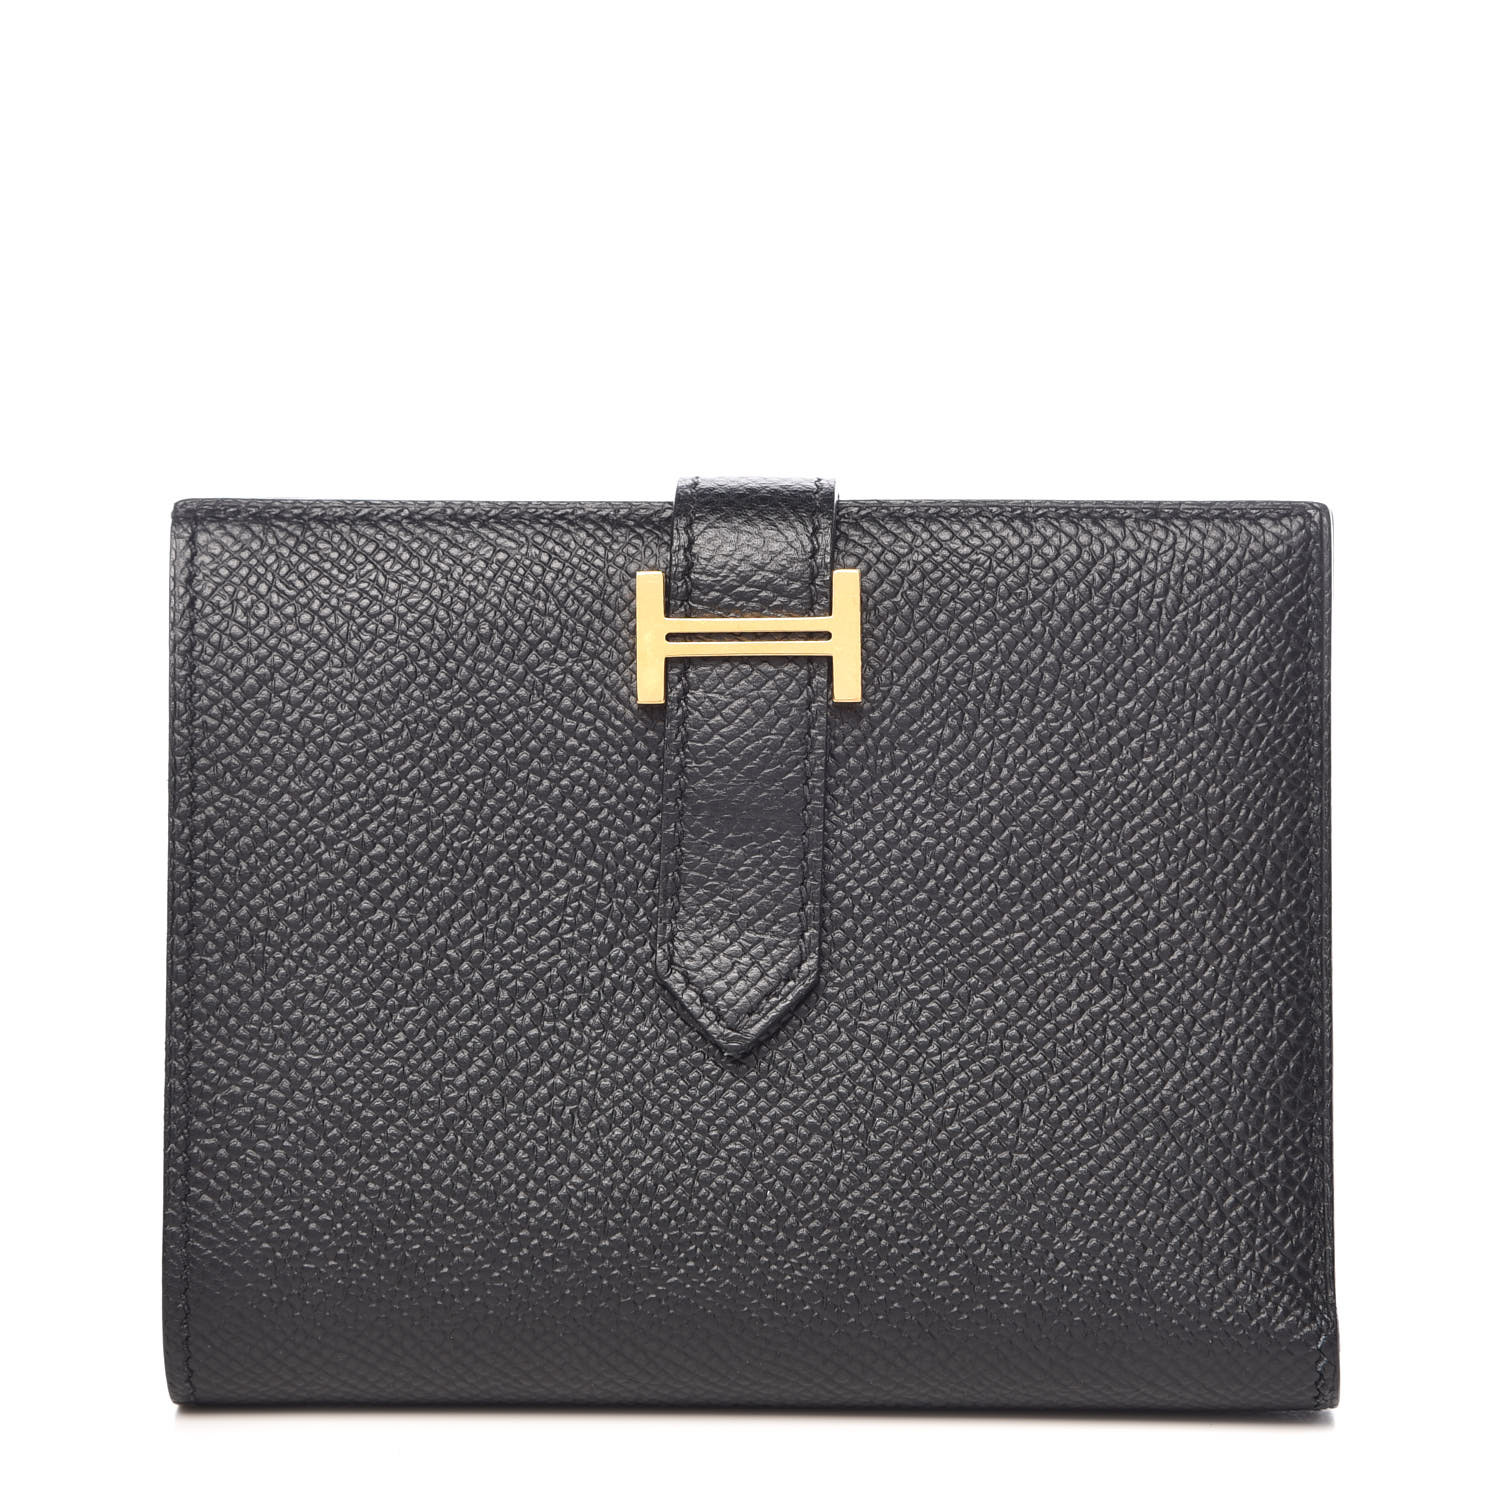 HERMES Epsom Bearn Compact Wallet Black 390336